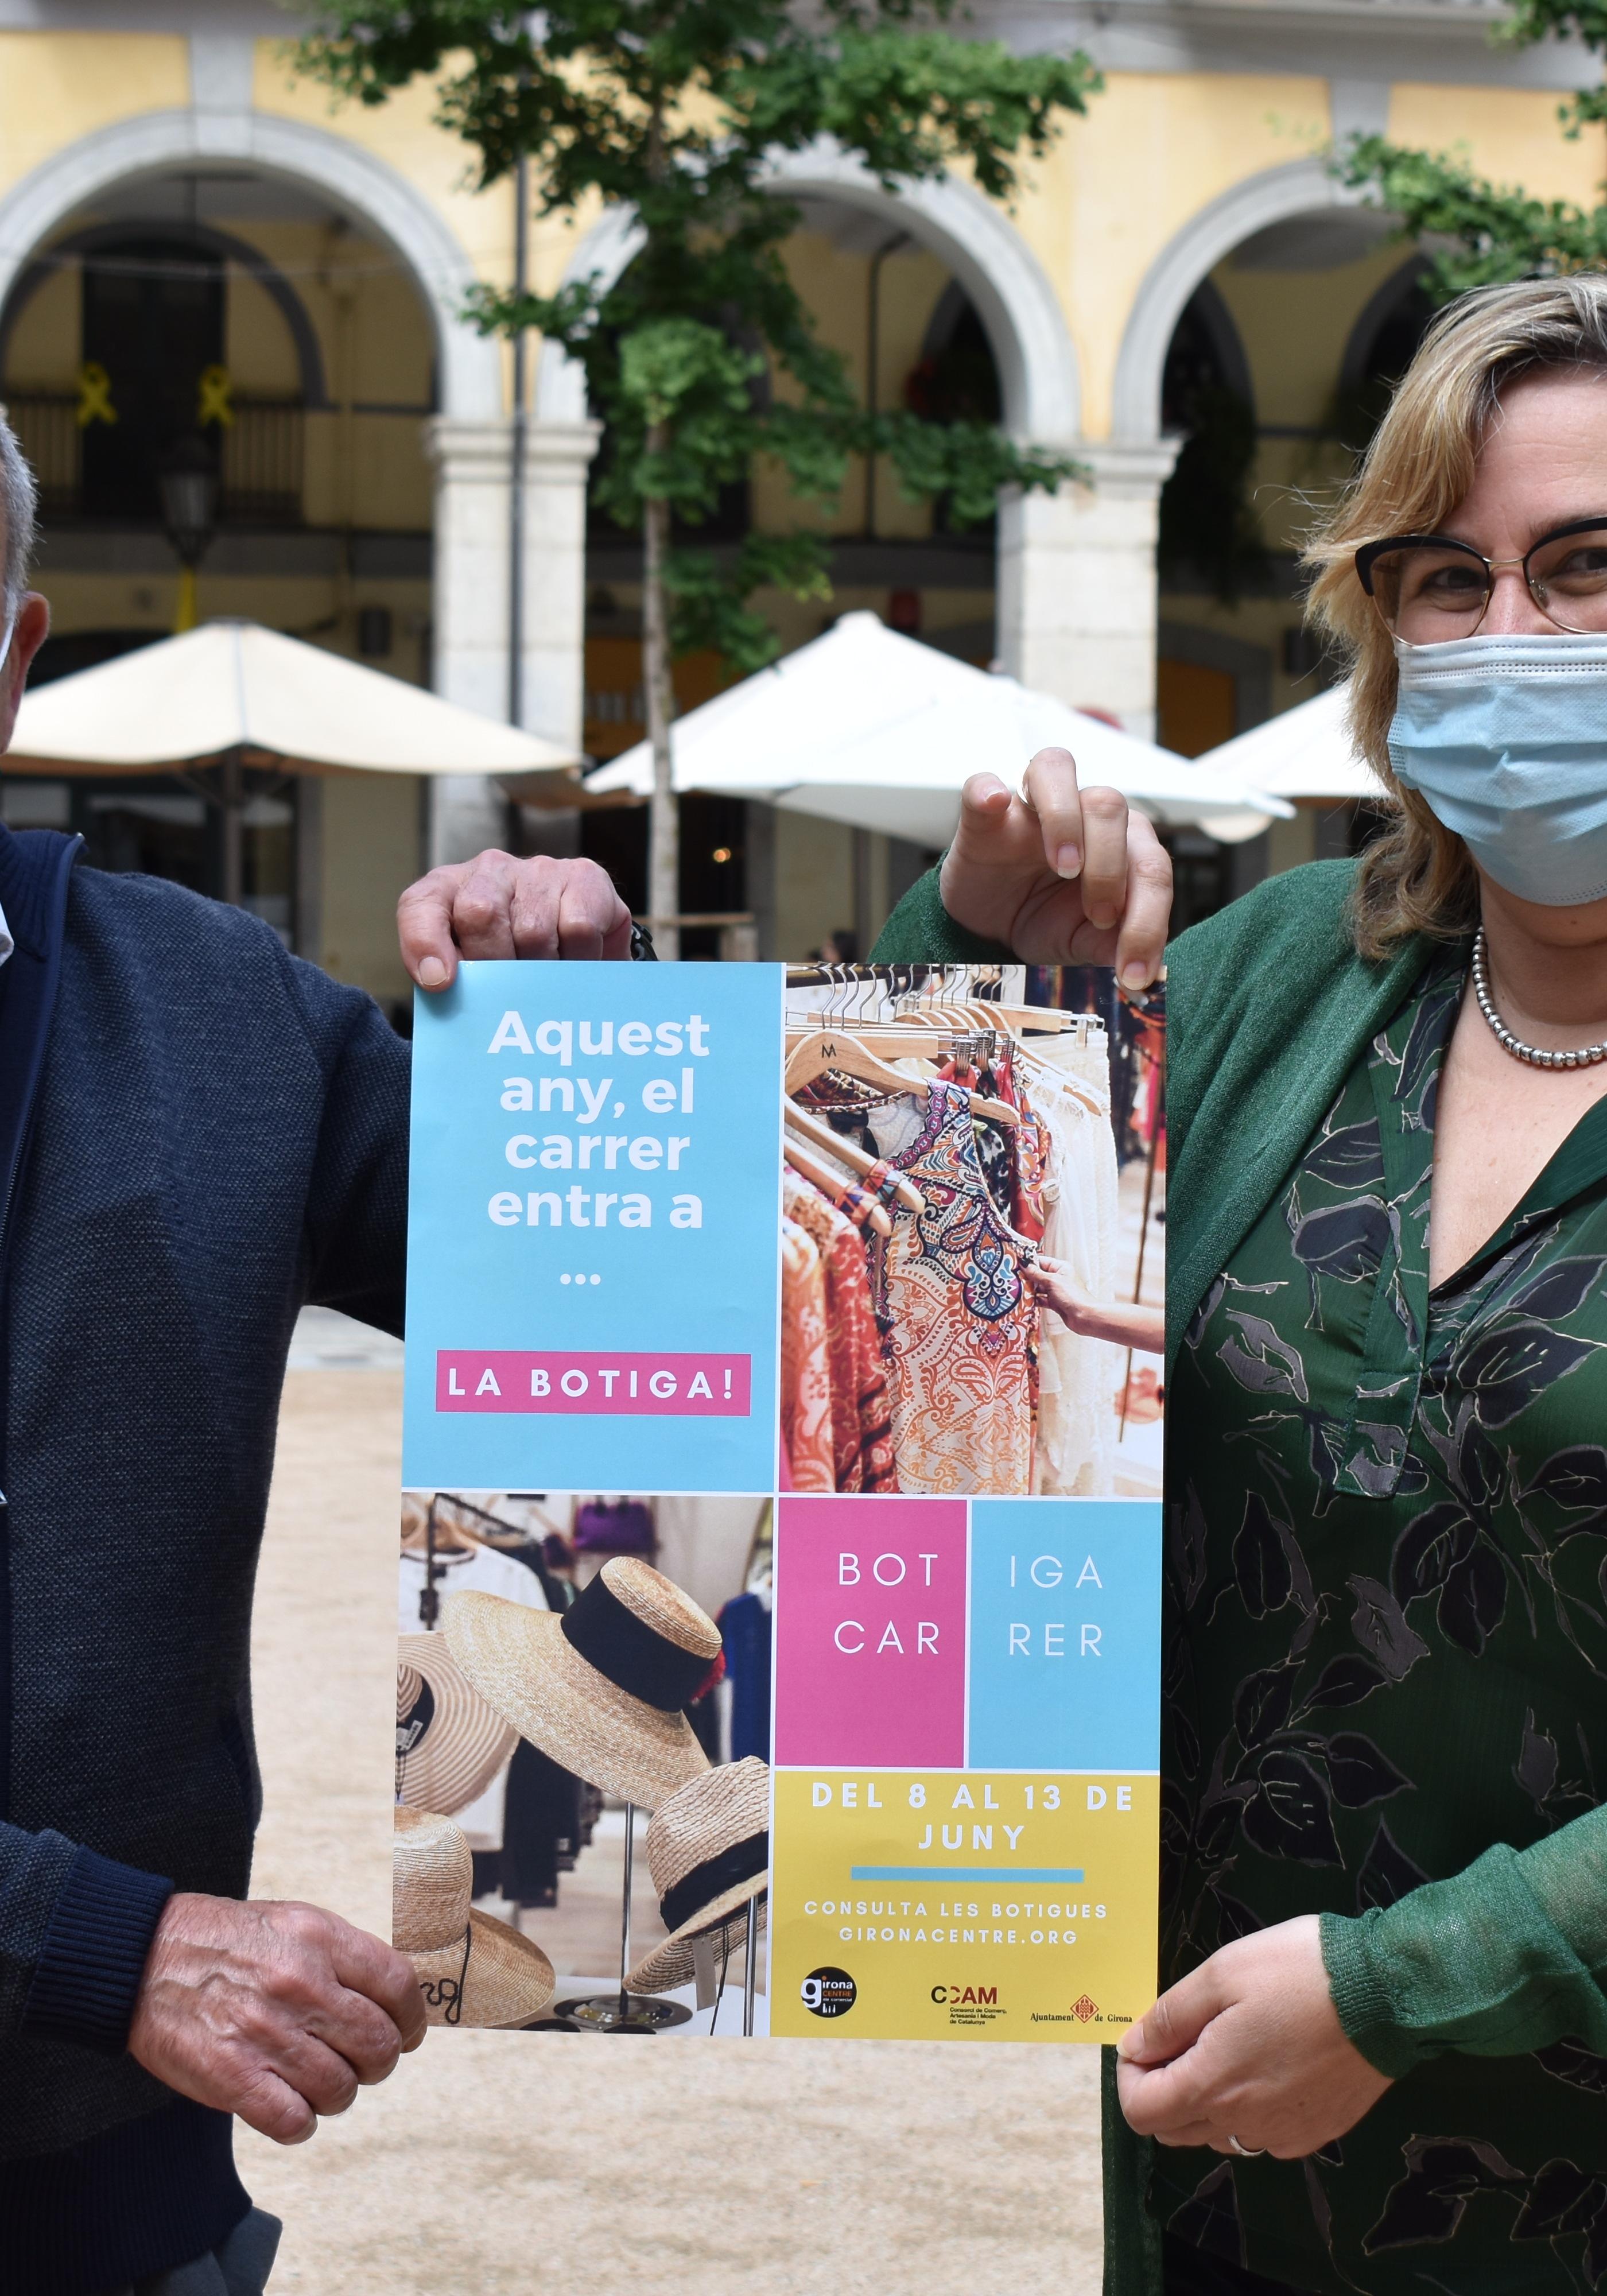 El petit comerç de Girona dona el tret de sortida a la campanya “Aquest any, el carrer entra a ... la botiga”